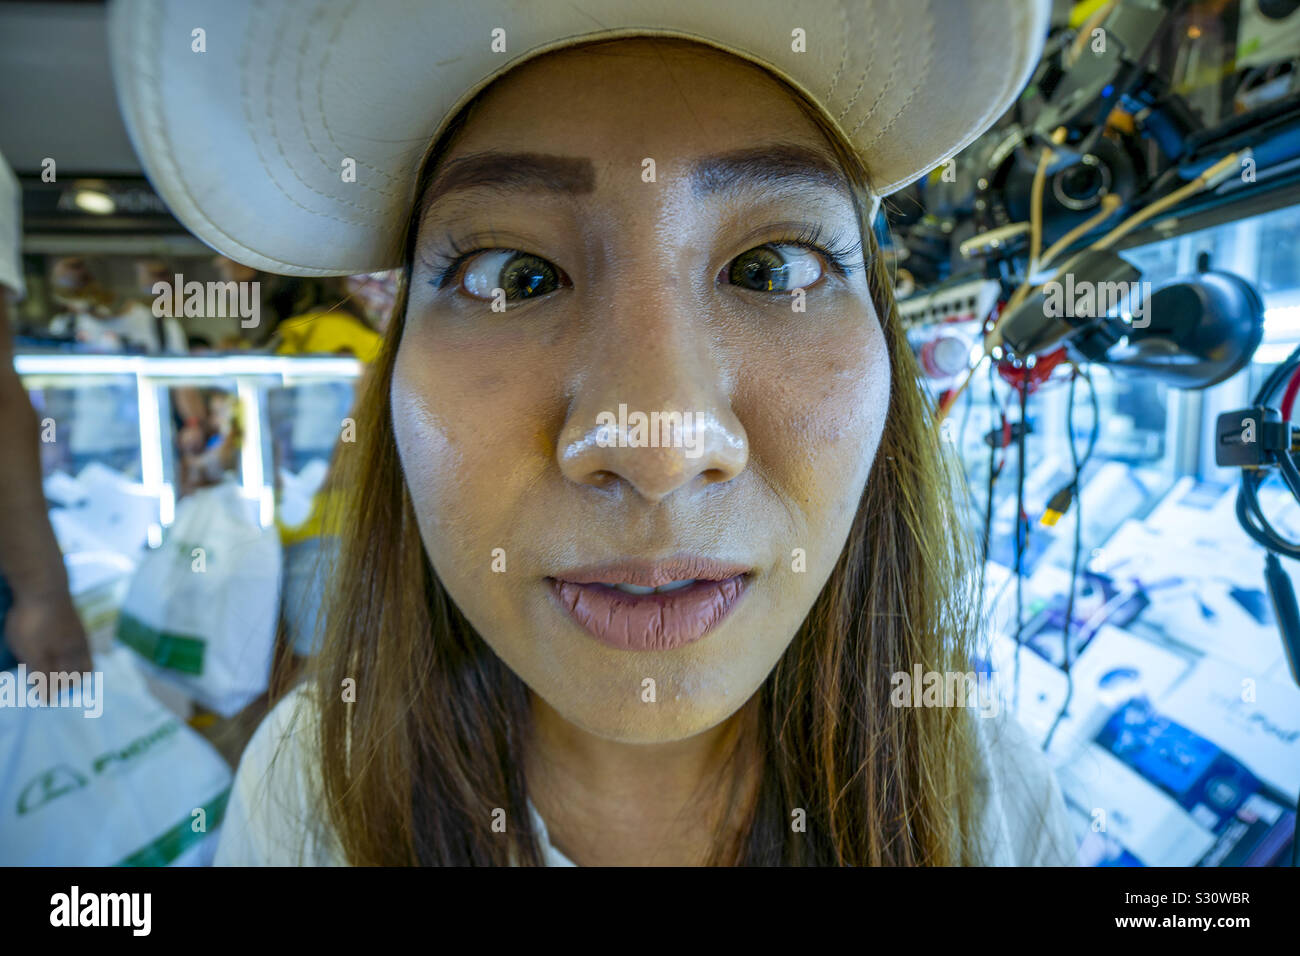 Fish Eye Objektiv Nahaufnahme von asiatischen Mädchen Gesicht Stockfoto